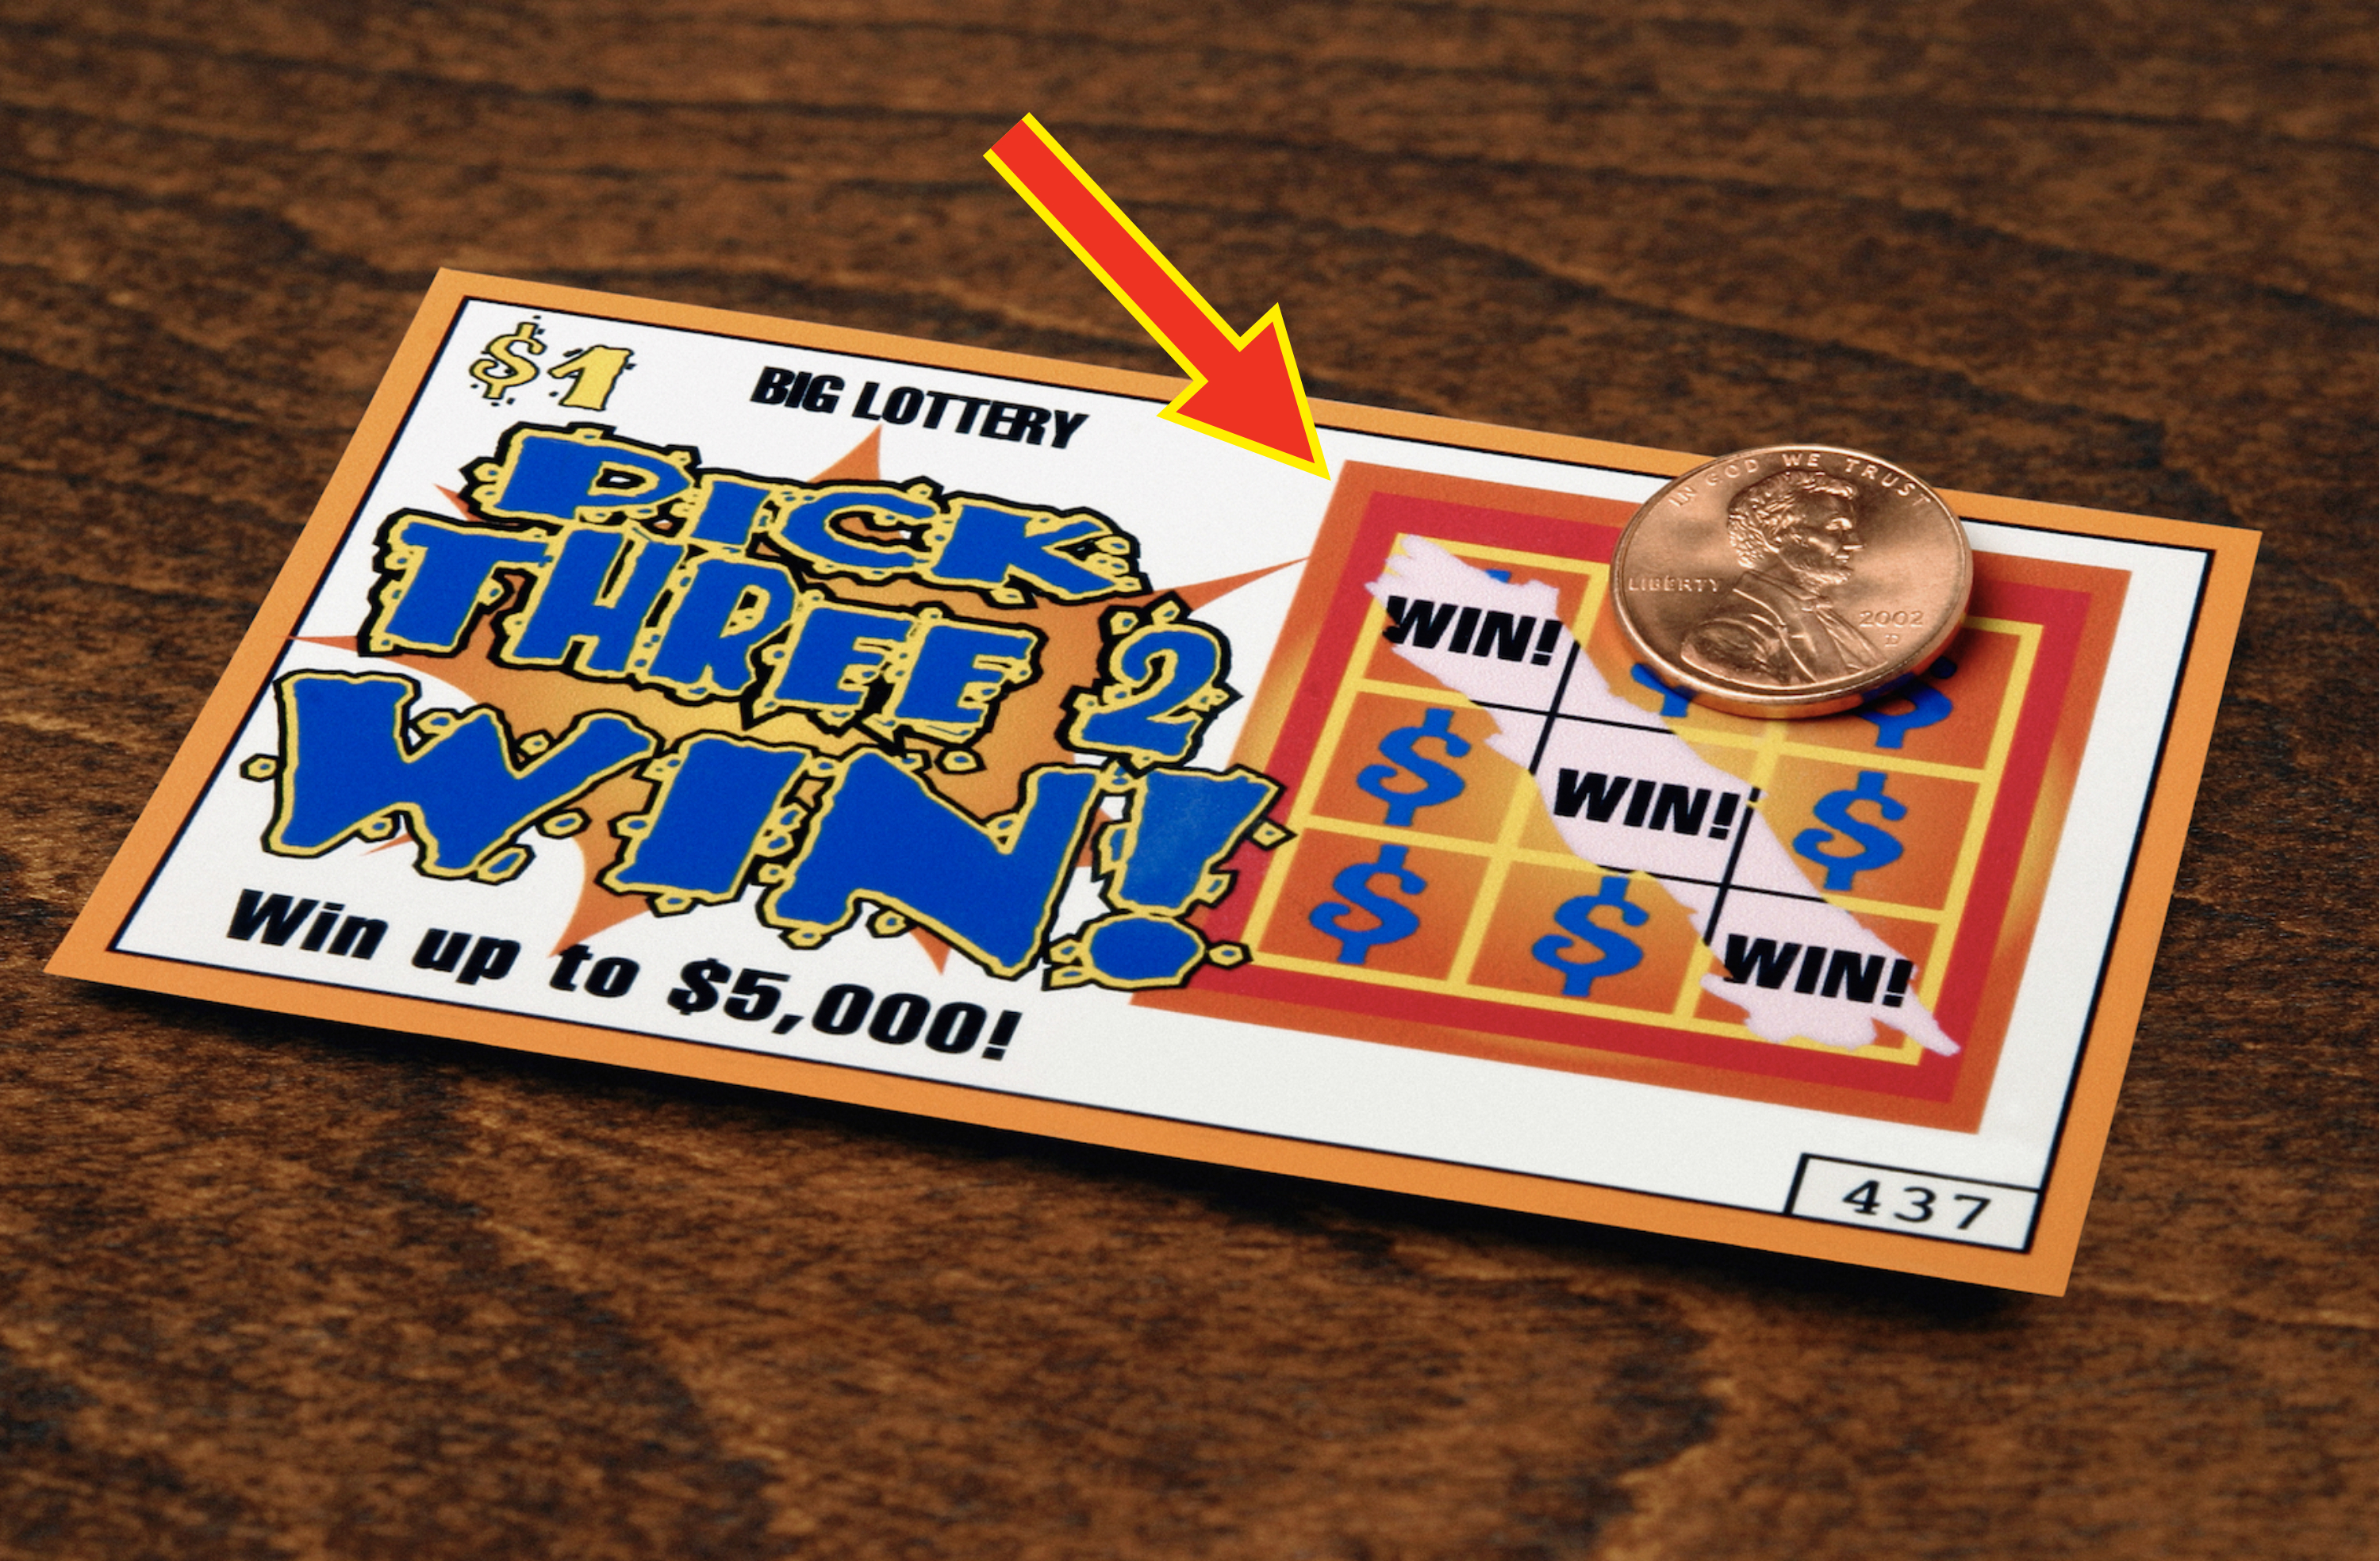 A winning lottery ticket